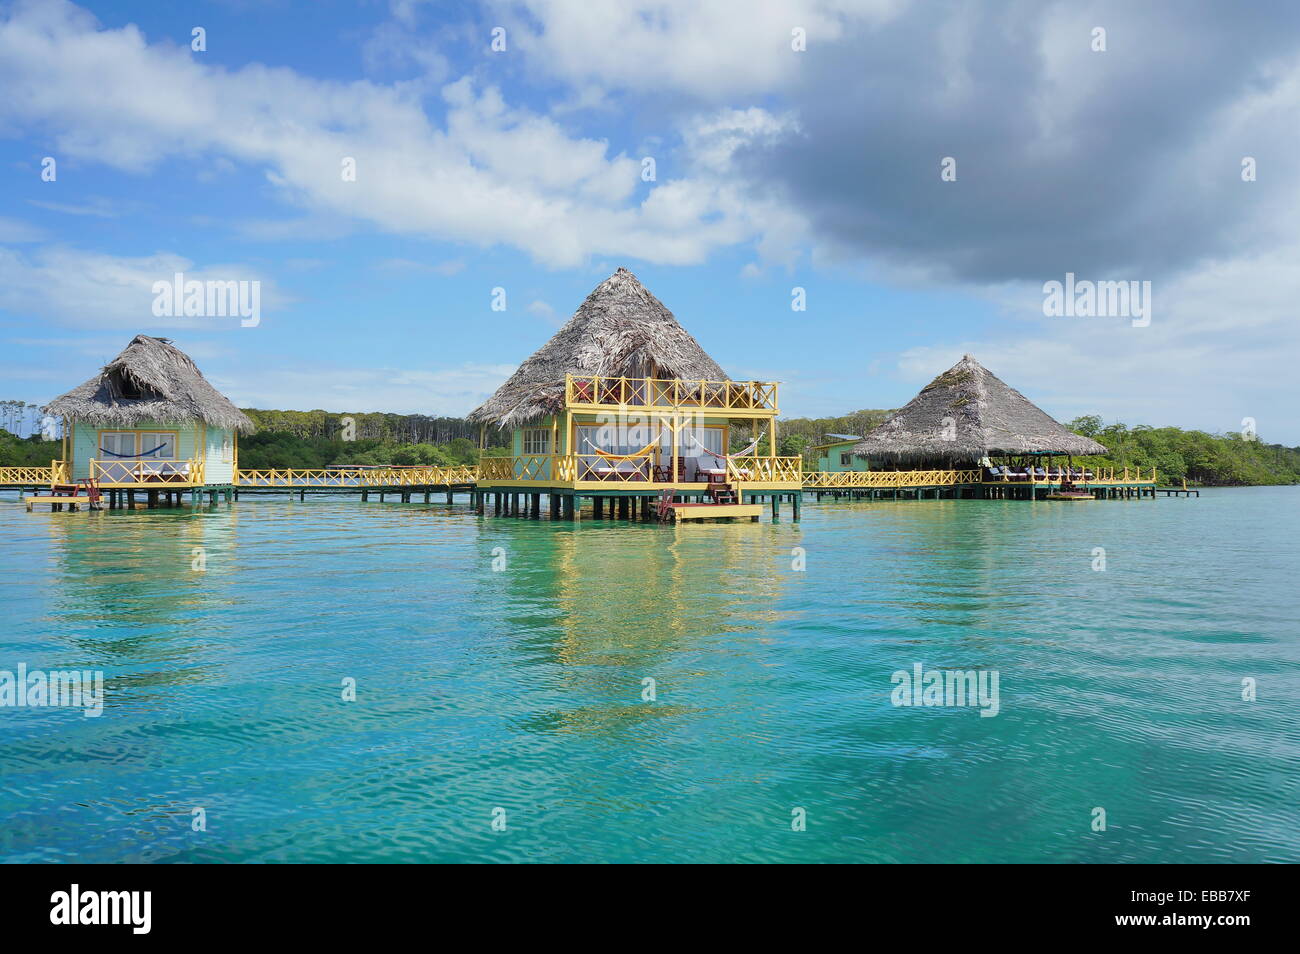 Tropical resort au fil de l'eau bungalow au toit de chaume, mer des Caraïbes Banque D'Images